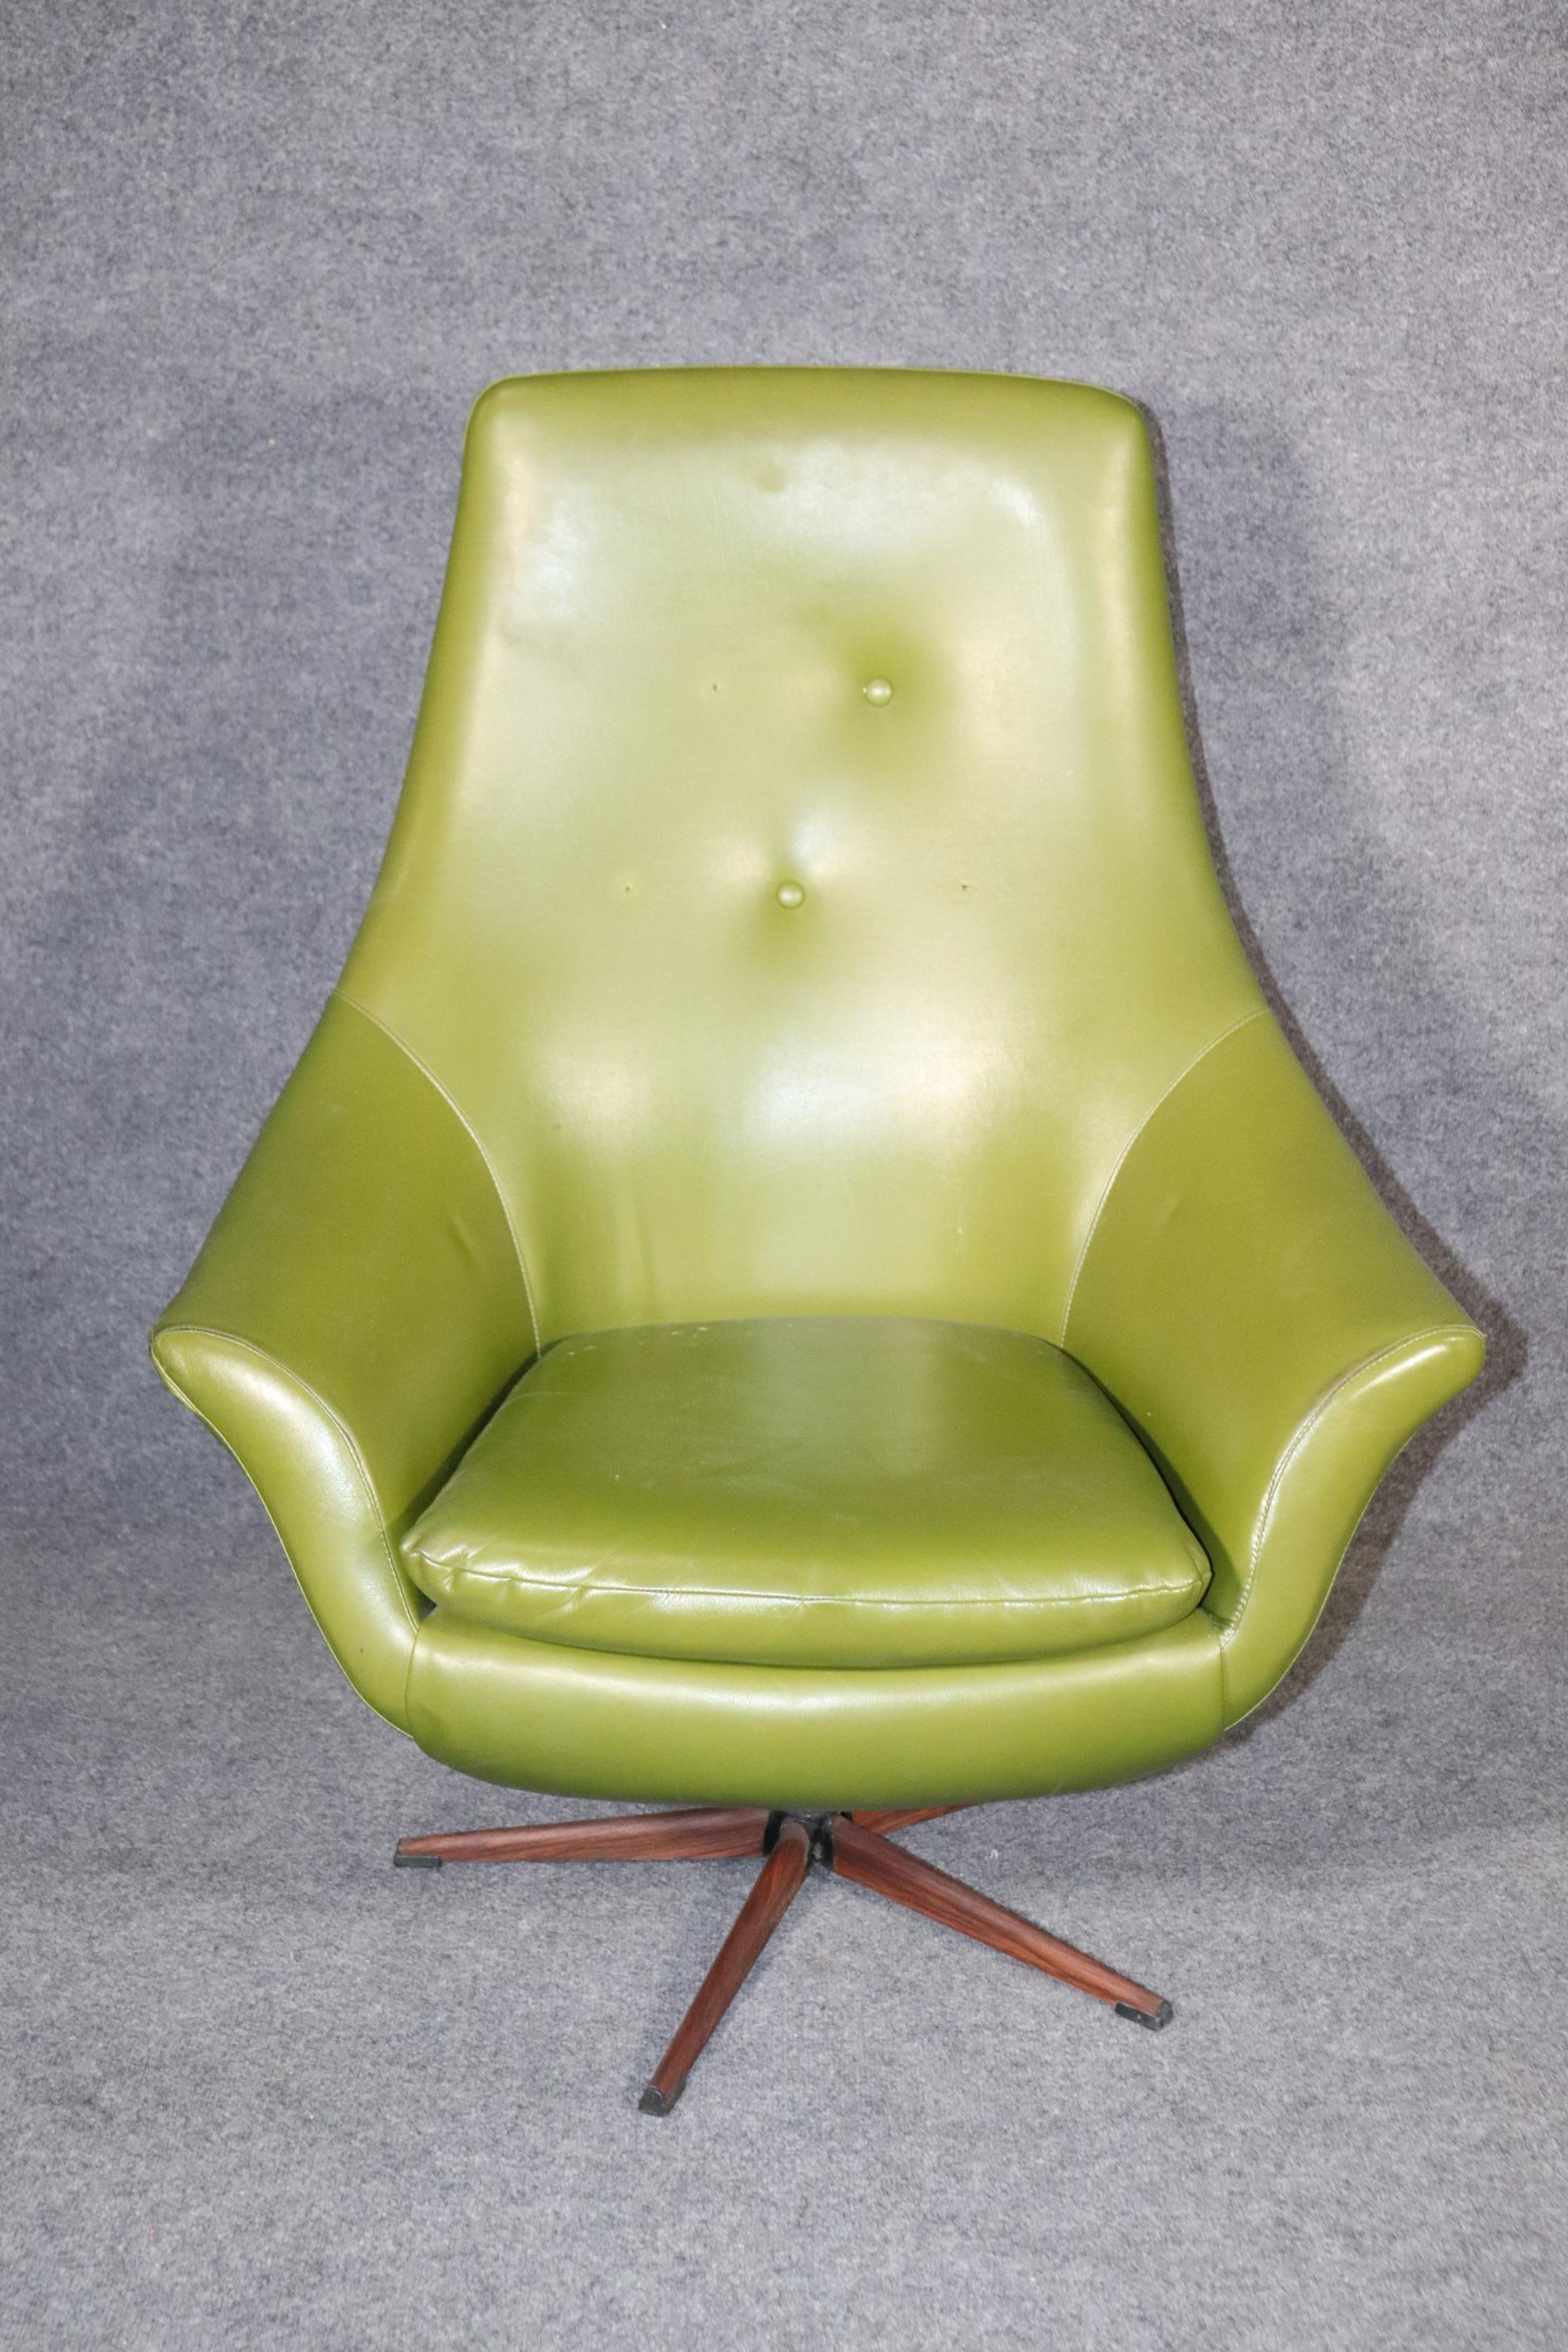 Moderner Sessel aus den 1960er Jahren mit Ottomane aus leuchtend grünem Vinylstoff. Schwenkbare Mechanik mit geschwungenen, modernen Linien.
Bitte bestätigen Sie den Standort NY oder NJ